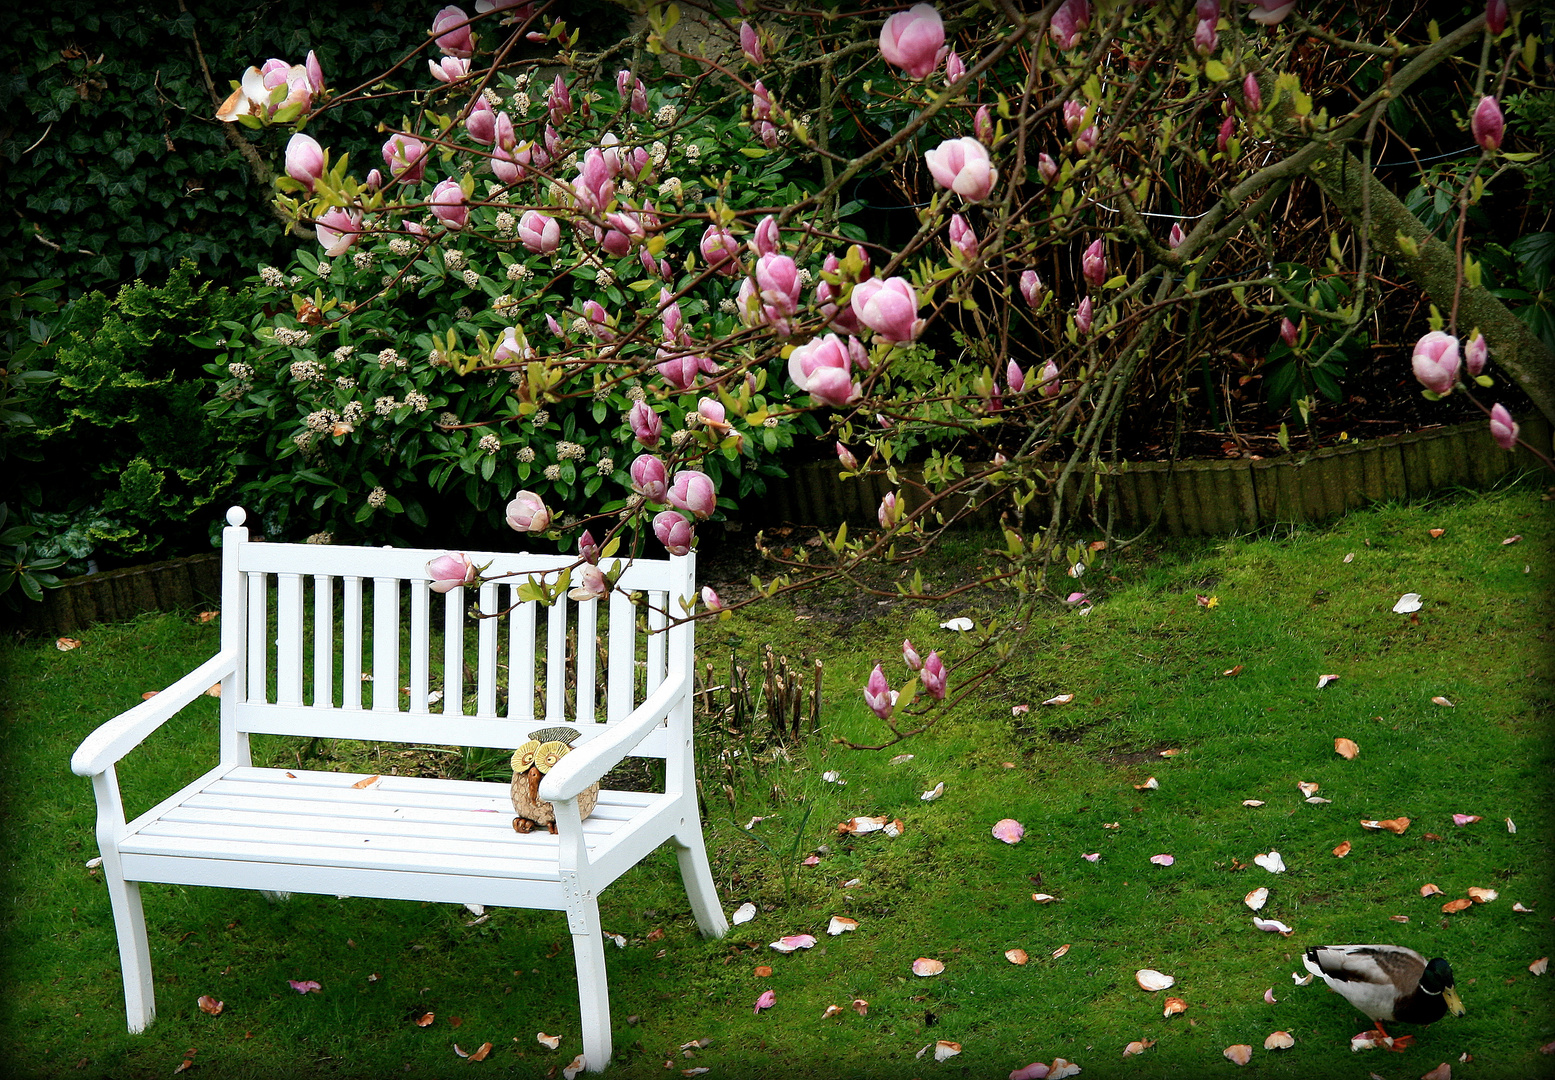 auf der bank sitzt die eule, ente 'rennt' weg, magnolien blühen nach wie vor !